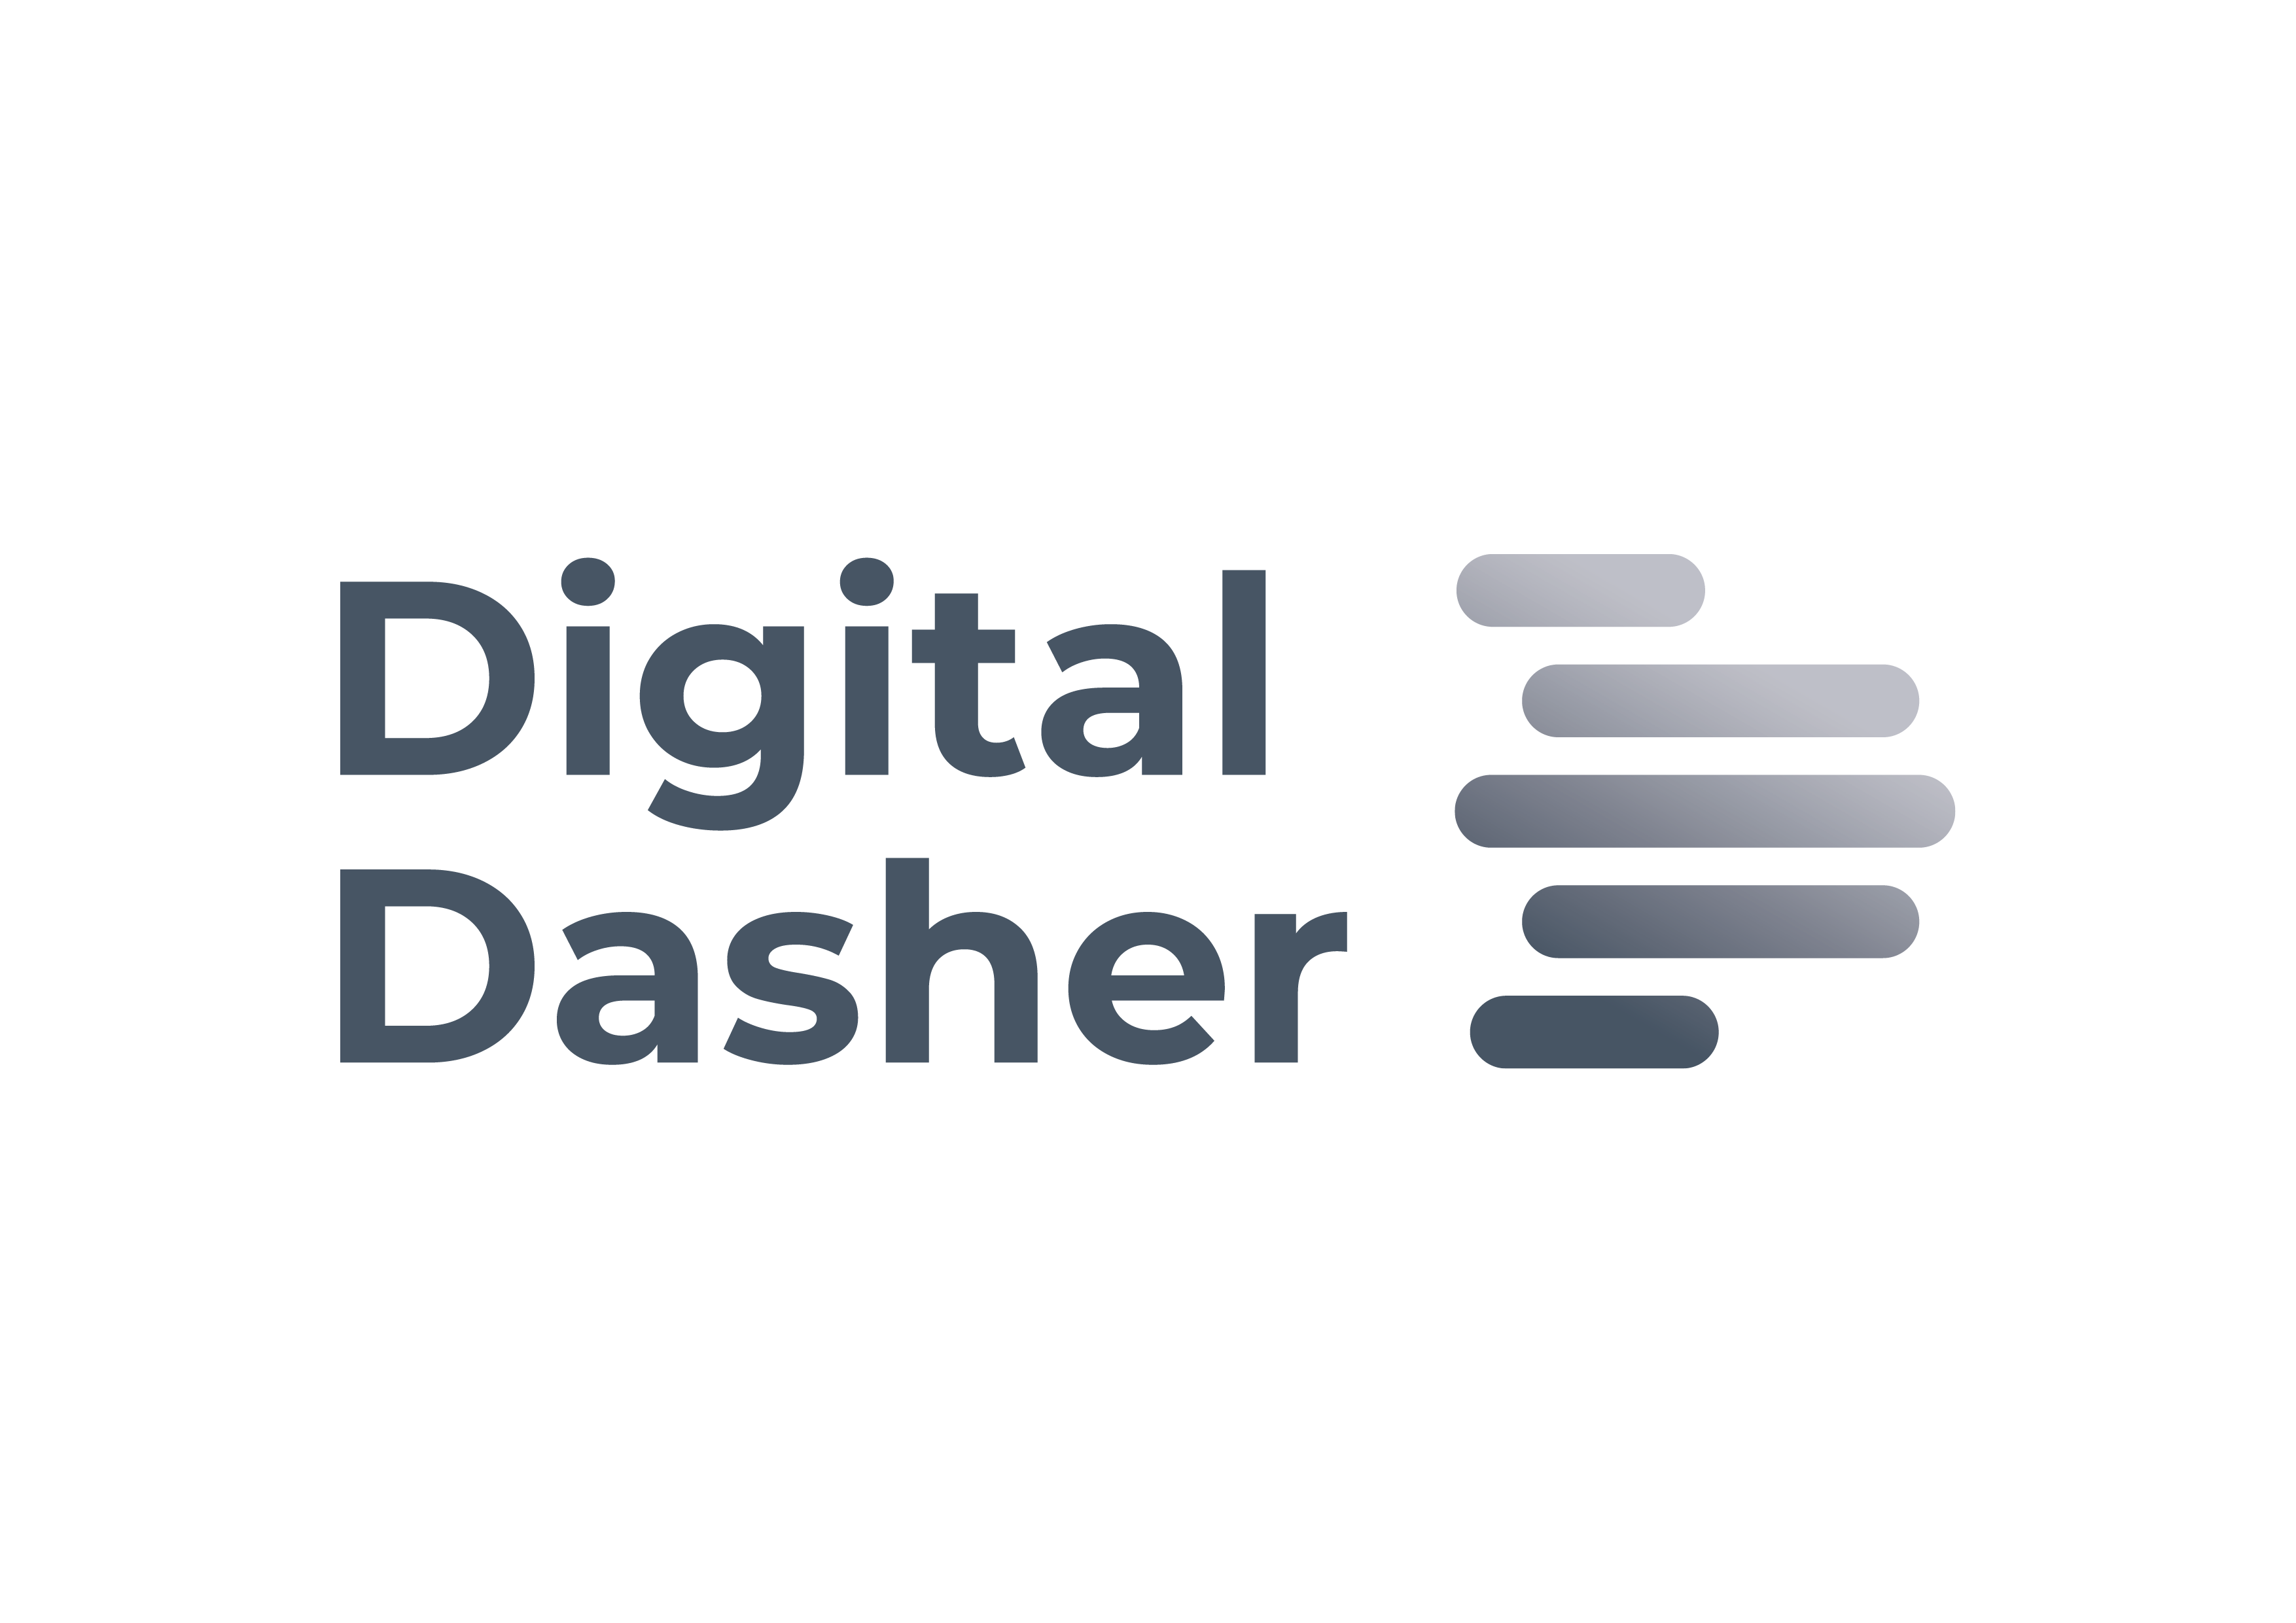 Digital Dasher